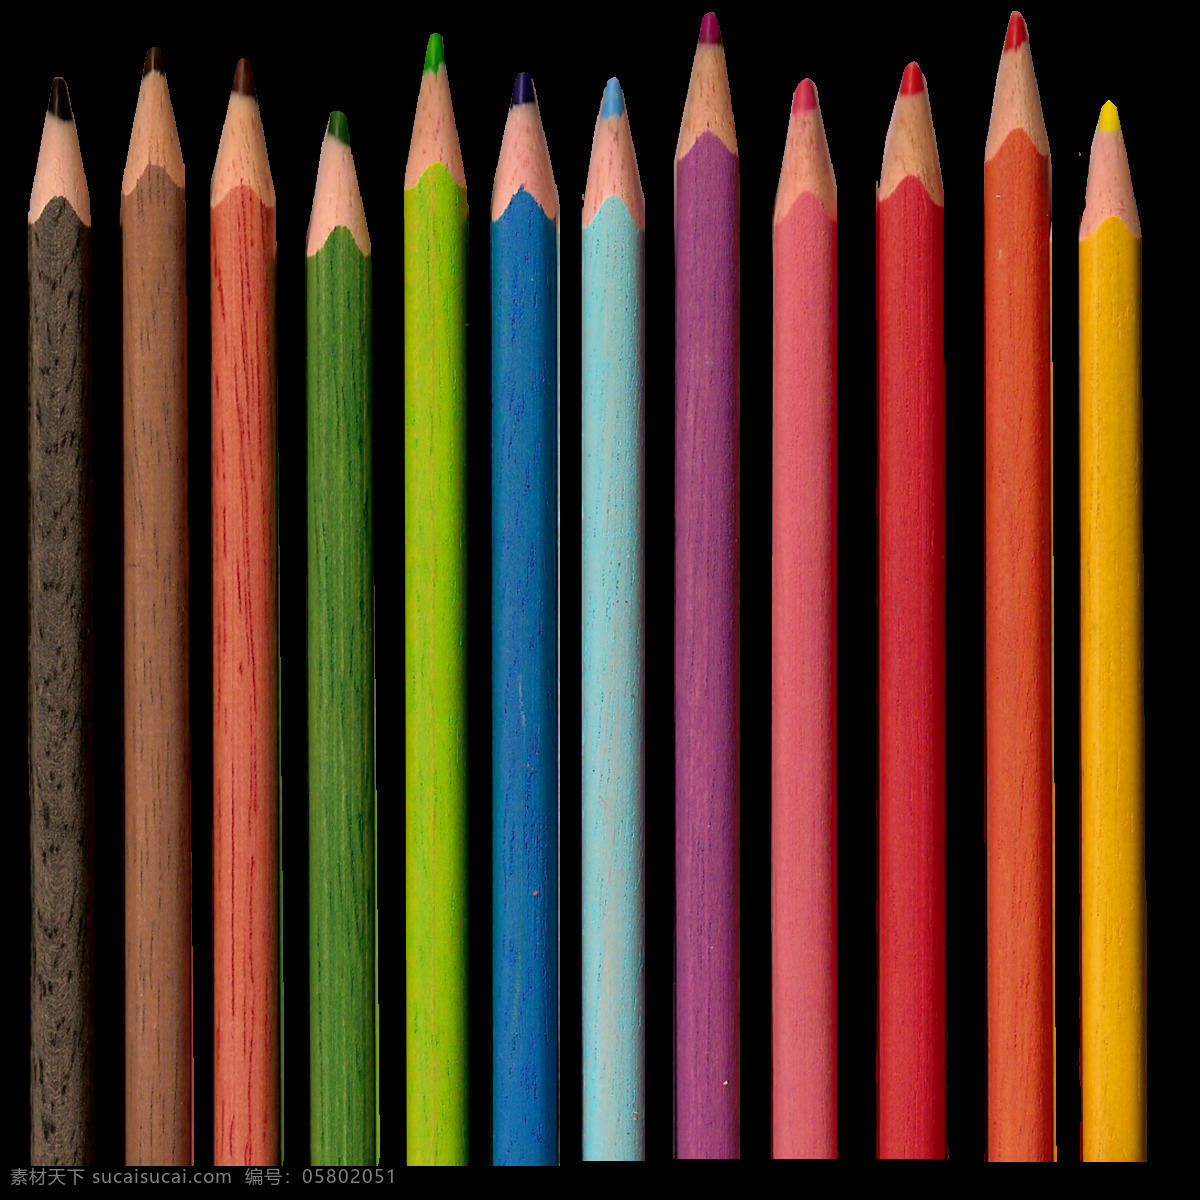 彩色 铅笔 免 抠 透明 图 层 卡通铅笔图片 卡通 简 笔画 一支铅笔 铅笔创意图片 素描铅笔 彩色铅笔 黑色铅笔 彩铅 画笔铅笔 铅笔图片 七彩铅笔 彩色铅笔素材